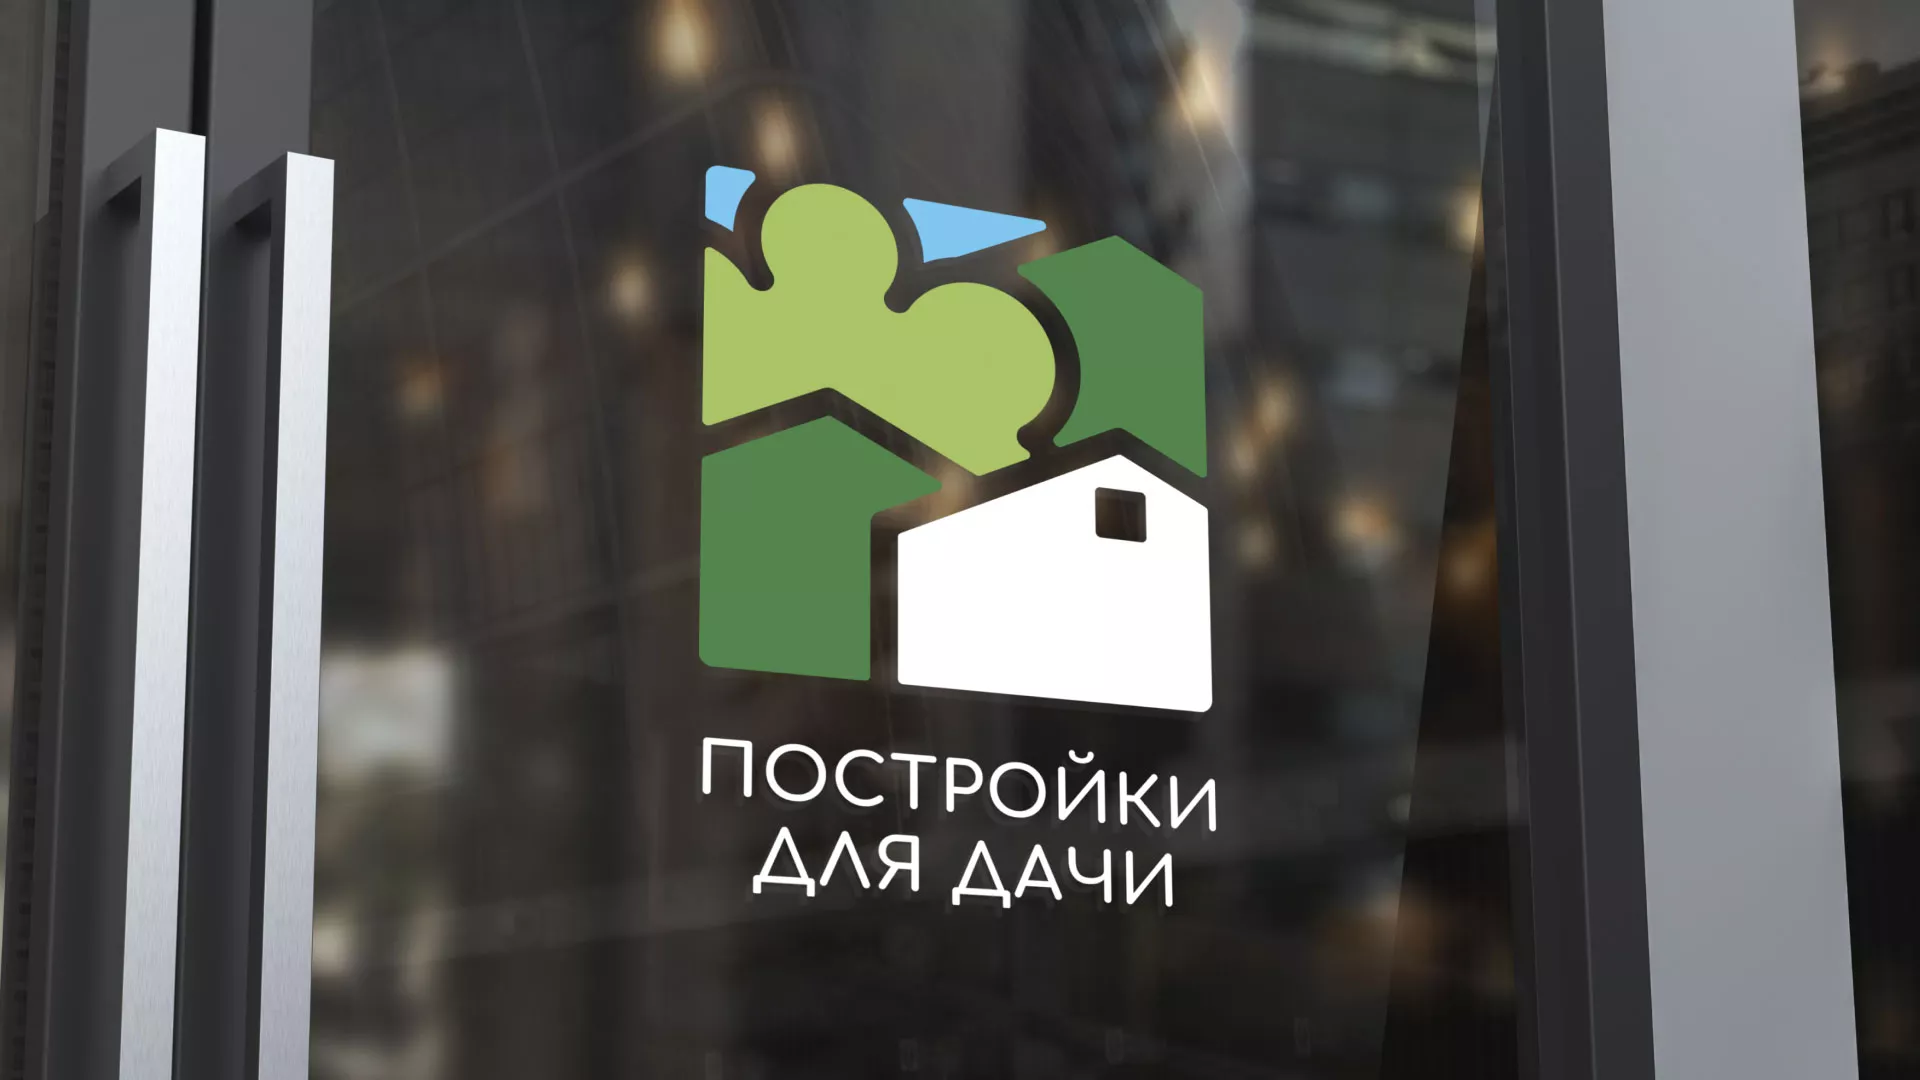 Разработка логотипа в Гороховце для компании «Постройки для дачи»